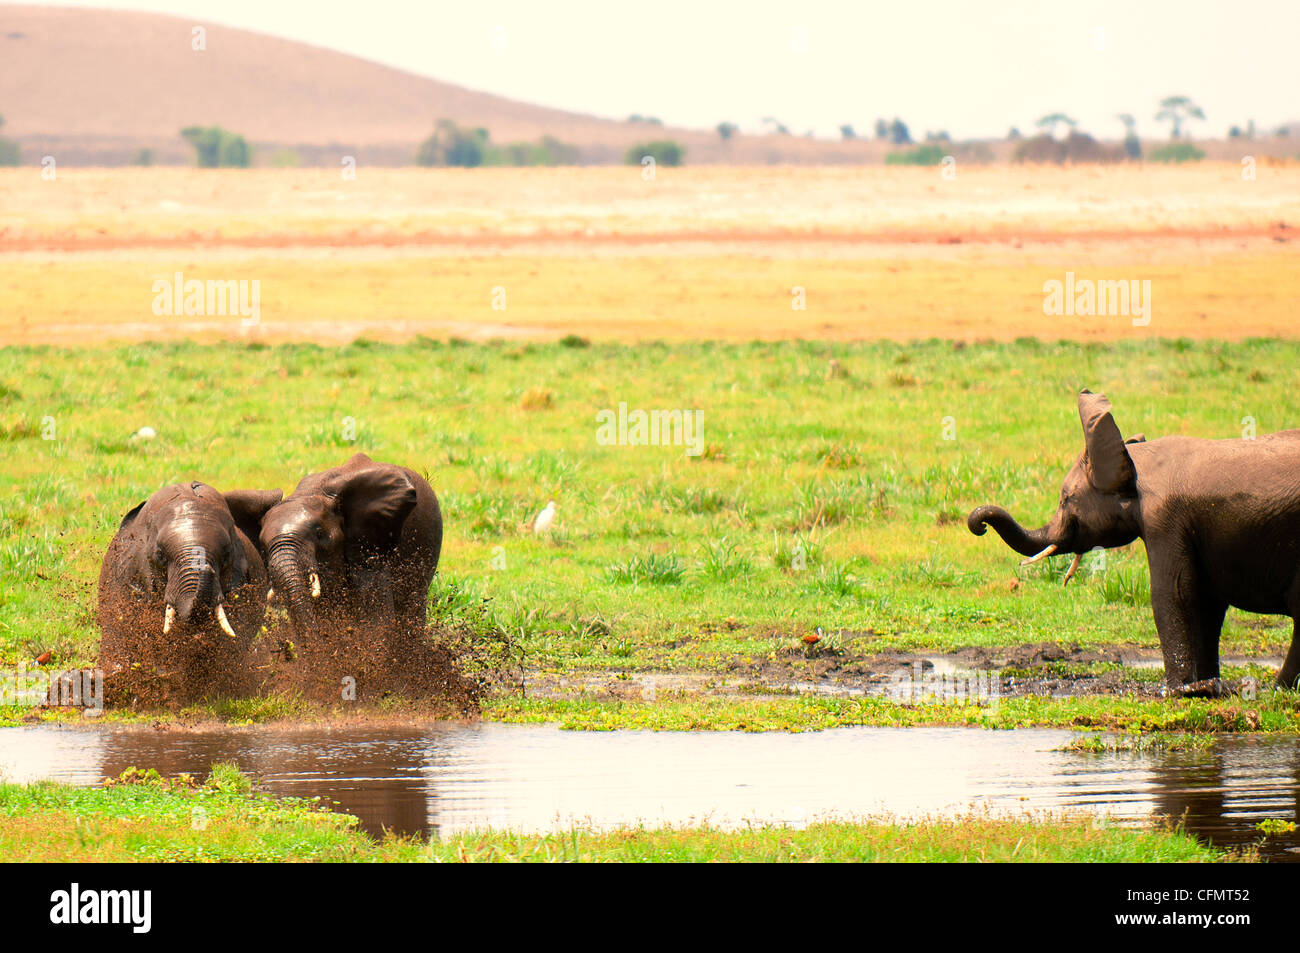 Fighting elephants in Amboseli Nationapark, Kenya Stock Photo